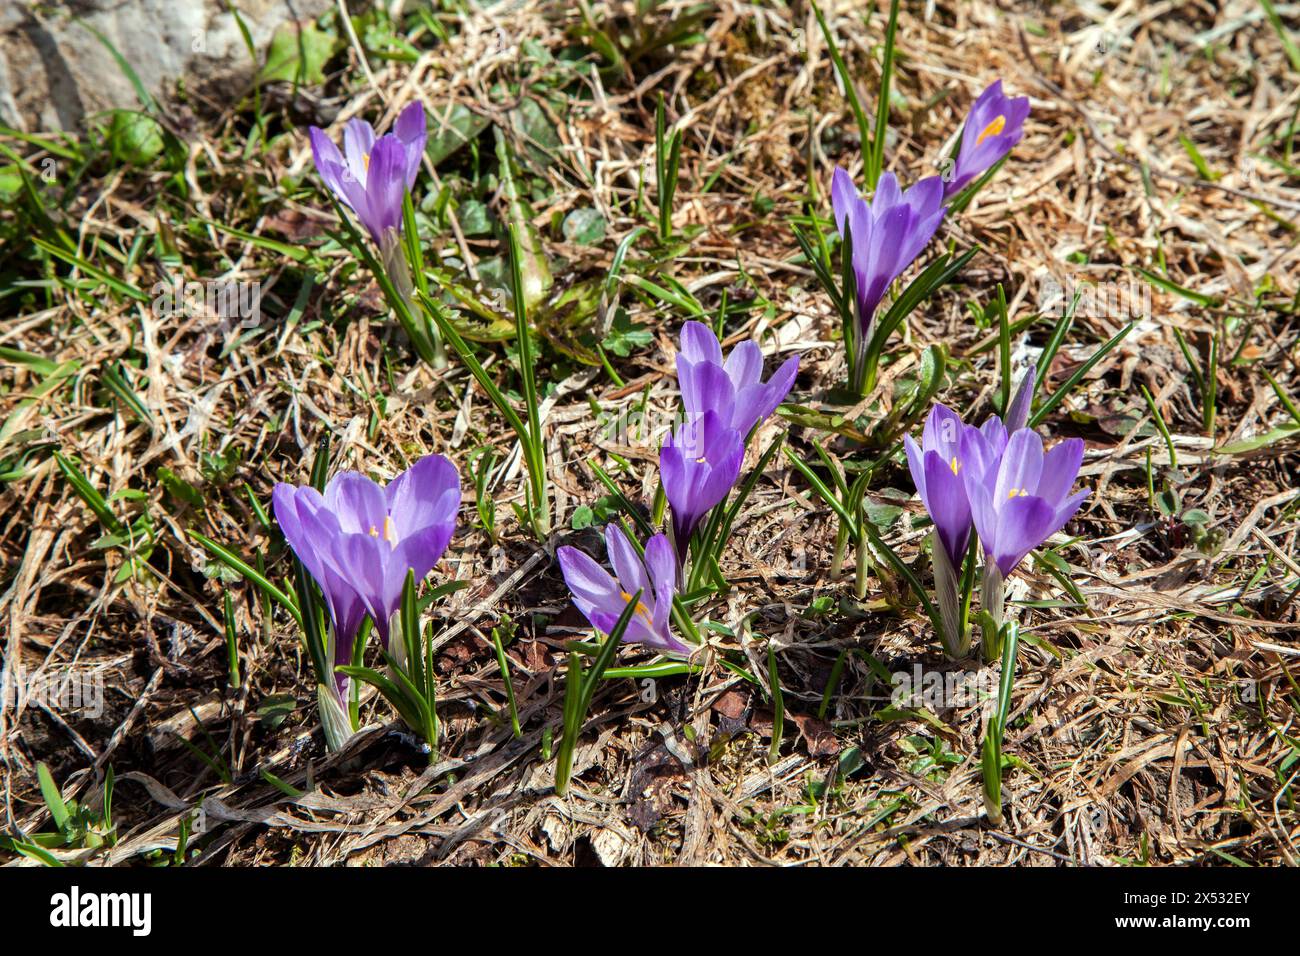 Crocus de printemps (Crocus vernus), Dietersbachtal, près d'Oberstdorf, Alpes d'Allgaeu, Oberallgaeu, Allgaeu, Bavière, Allemagne Banque D'Images